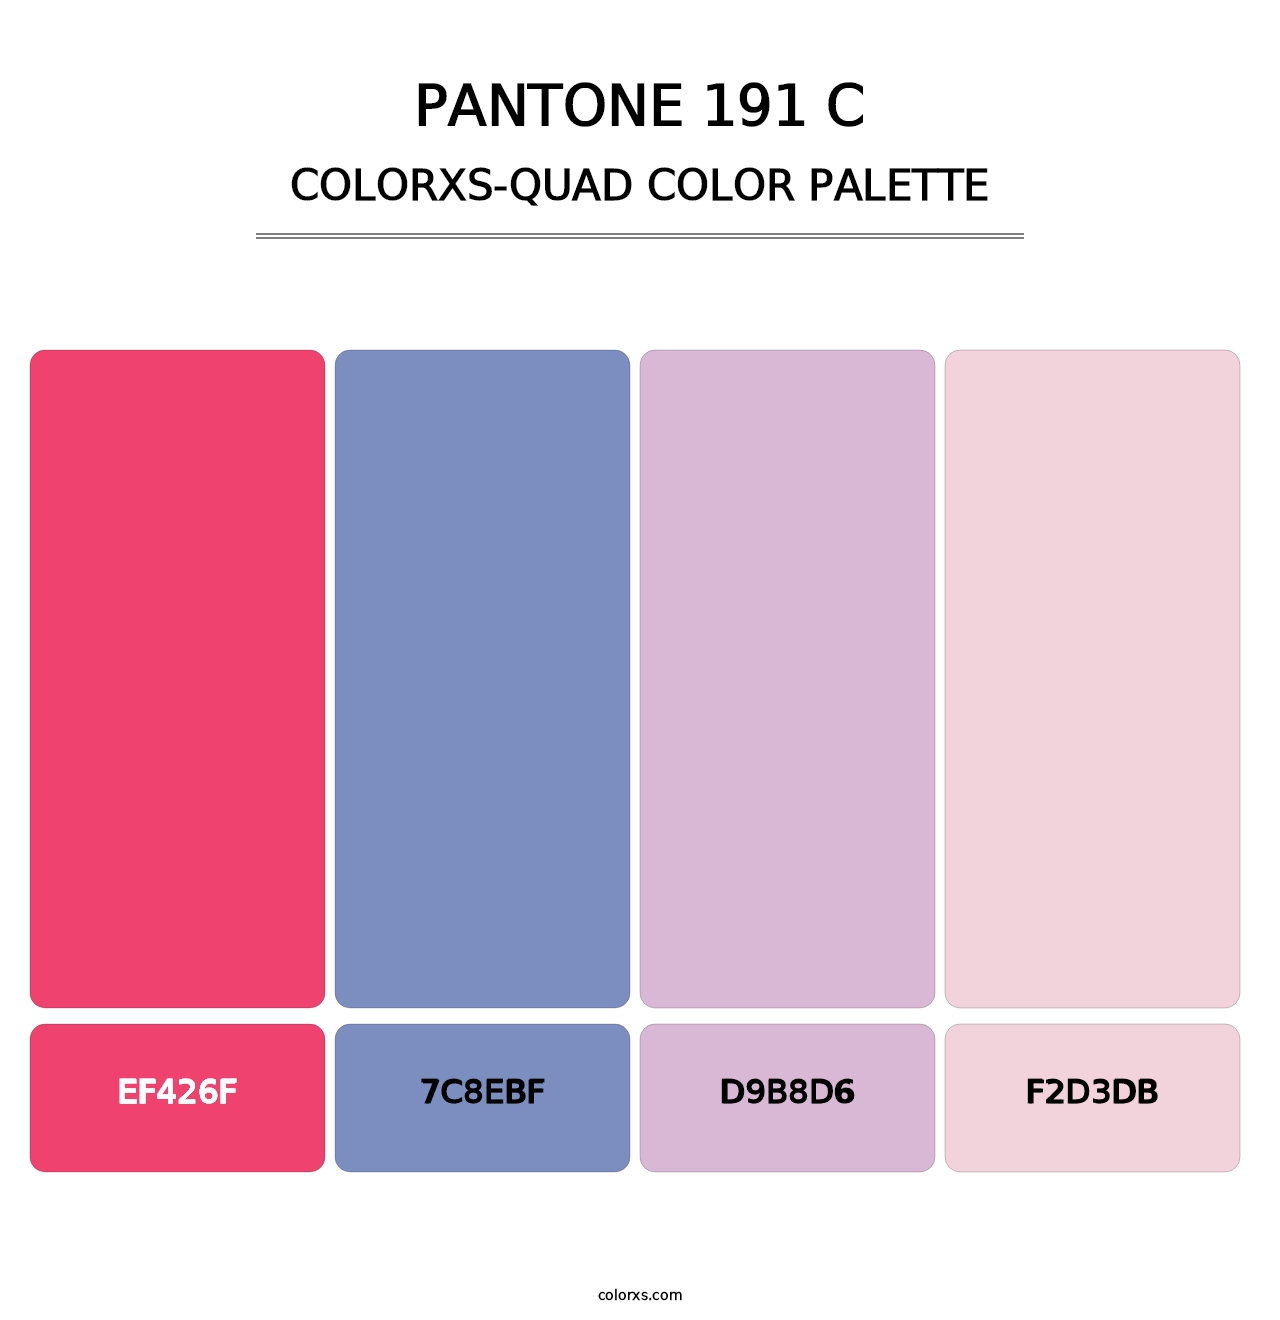 PANTONE 191 C - Colorxs Quad Palette